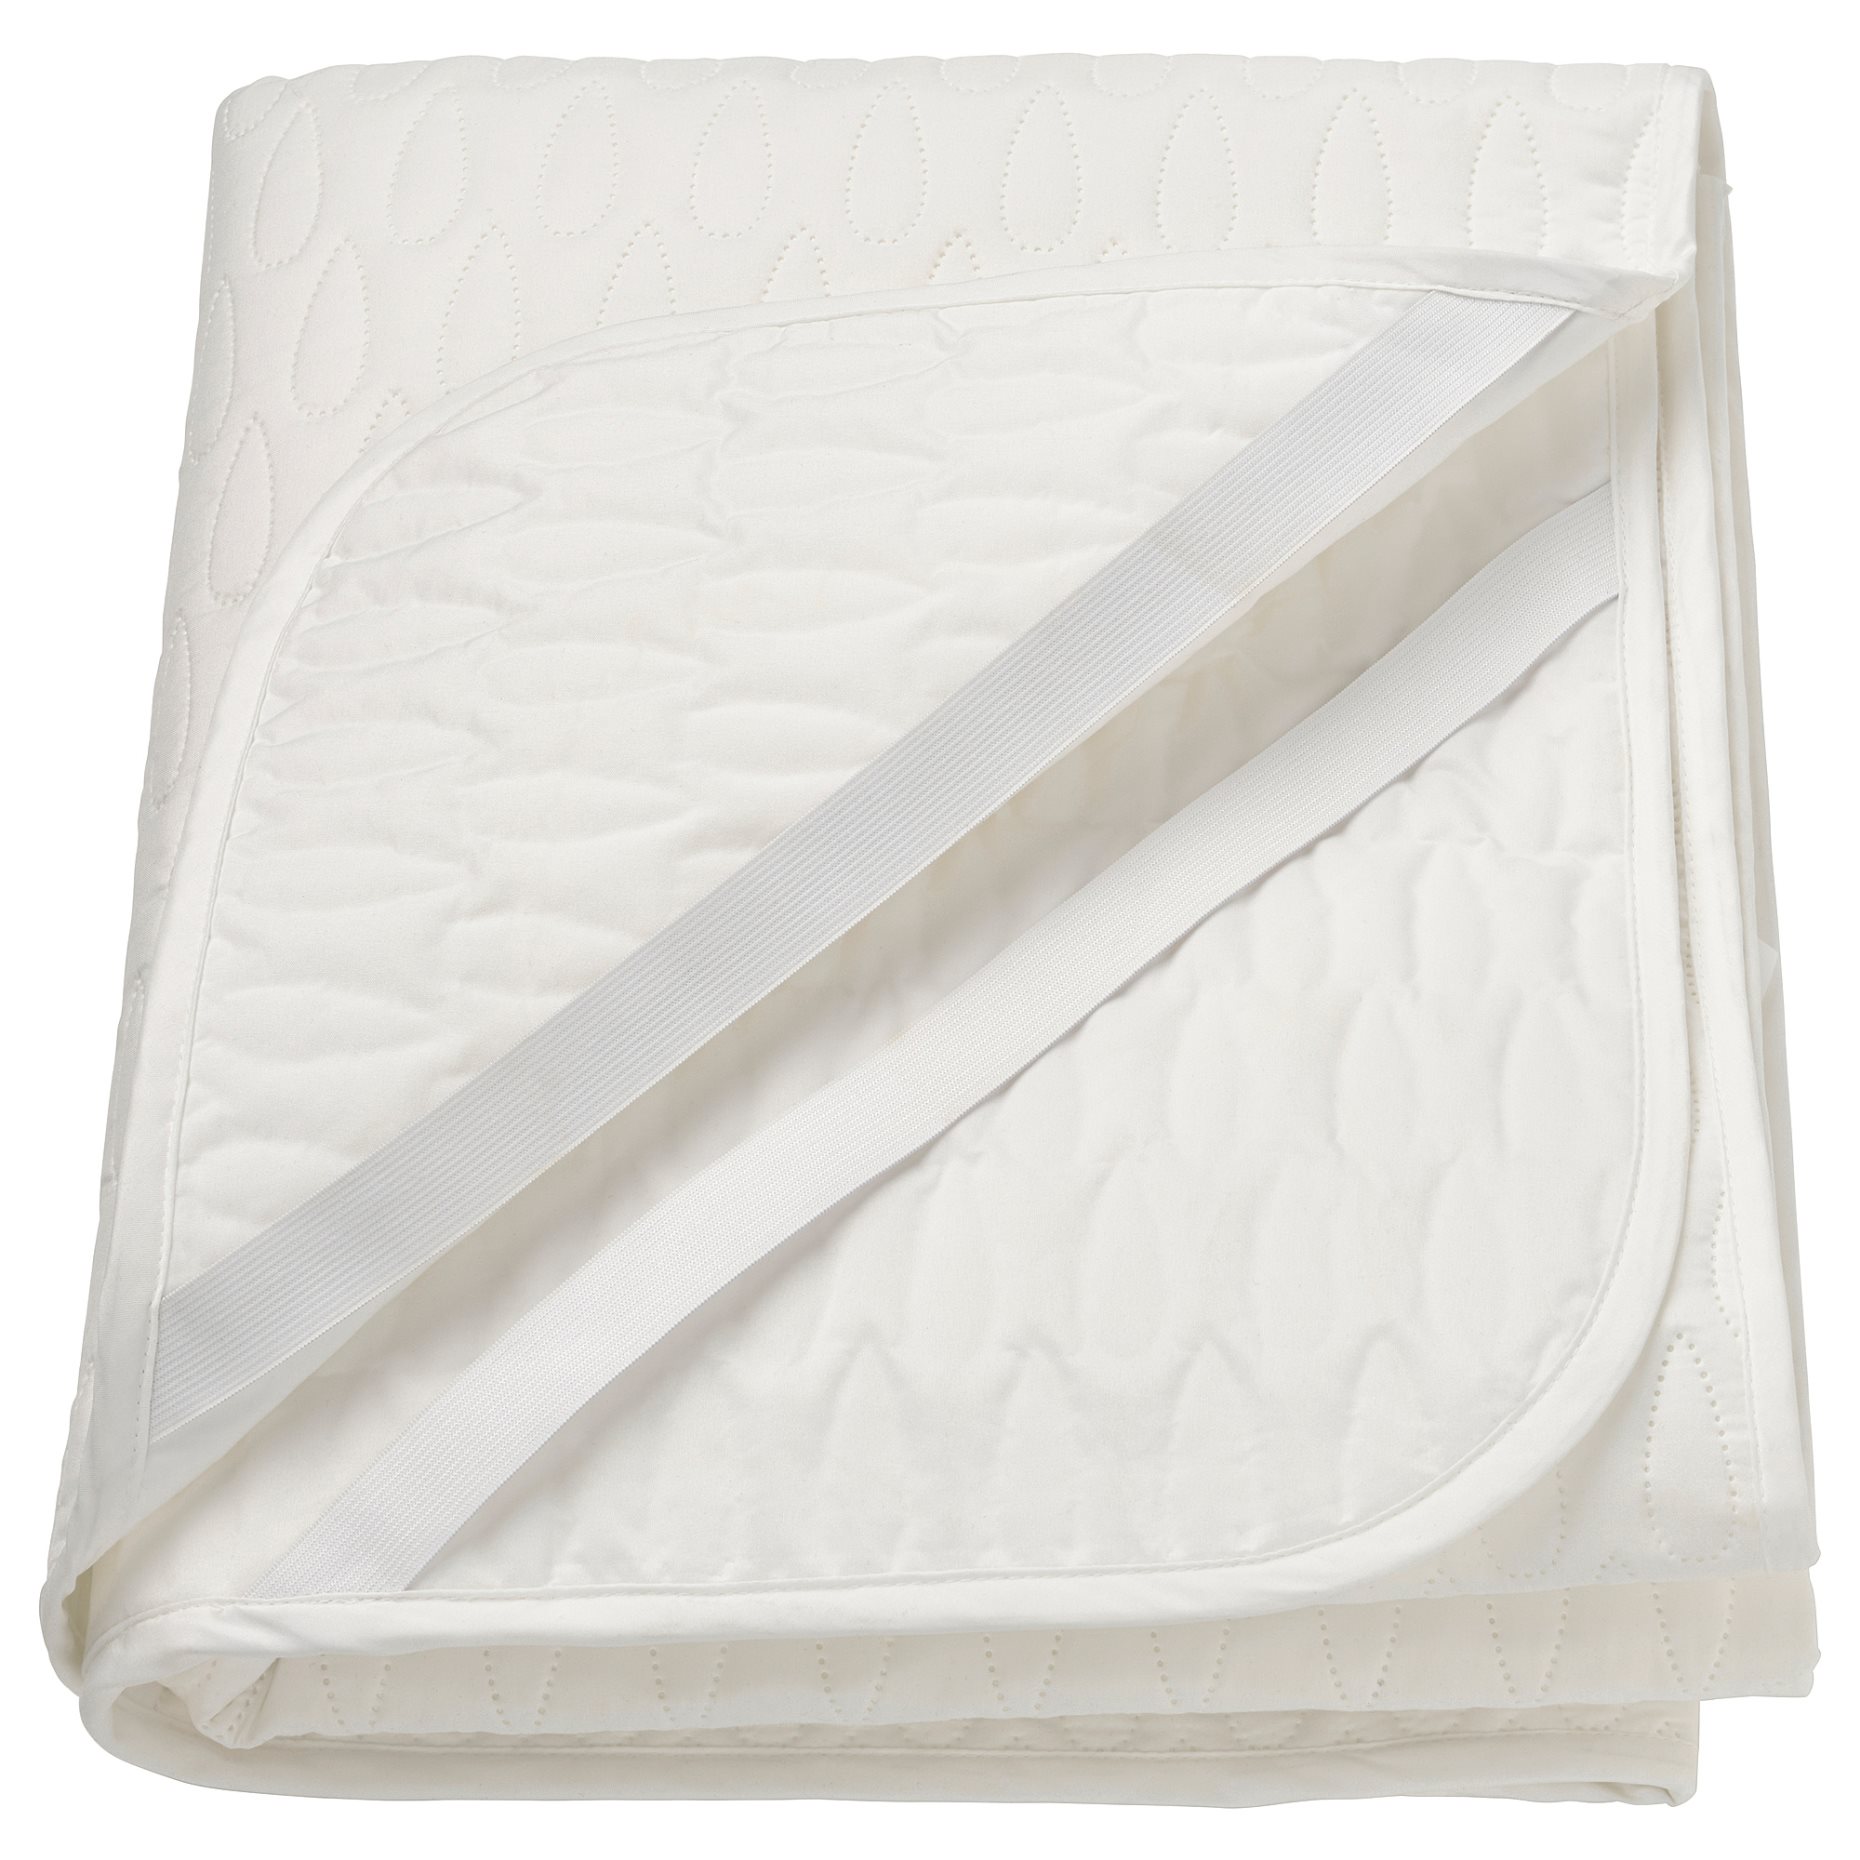 SOTNÄTFJÄRIL, waterproof mattress protector, 120x200 cm, 005.312.83